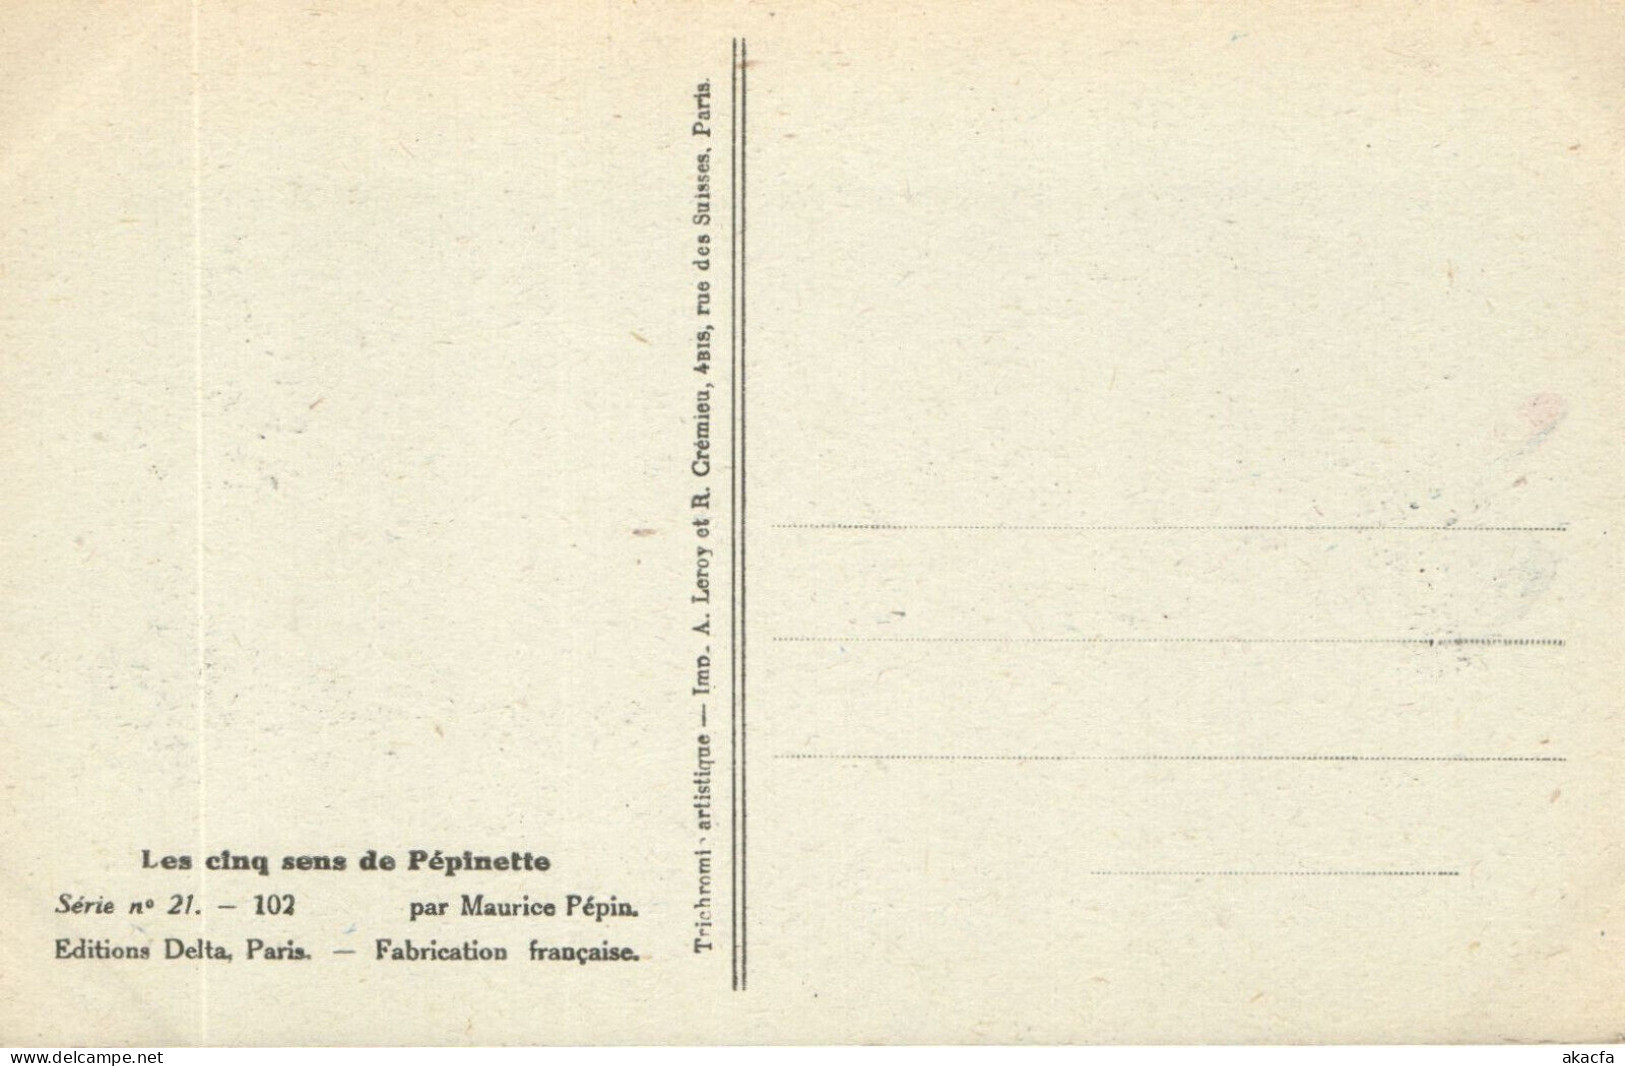 PC ARTIST SIGNED, M. PÉPIN, RISQUE, LES CINQ SENS, Vintage Postcard (b50548) - Pepin